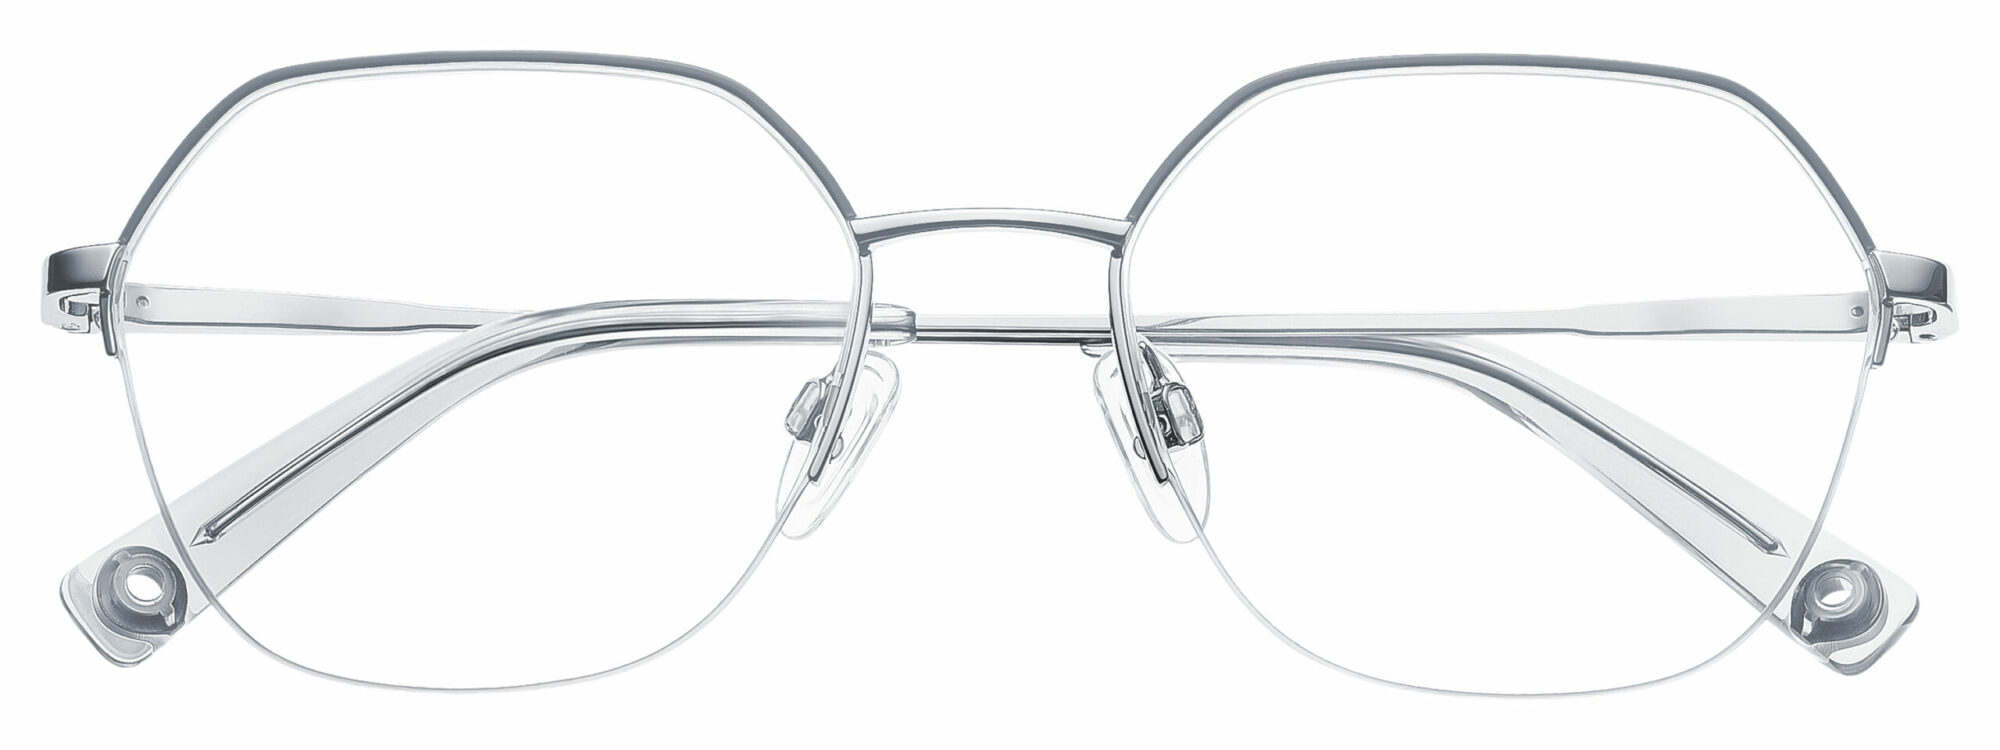 BRENDEL eyewear - 902382-03